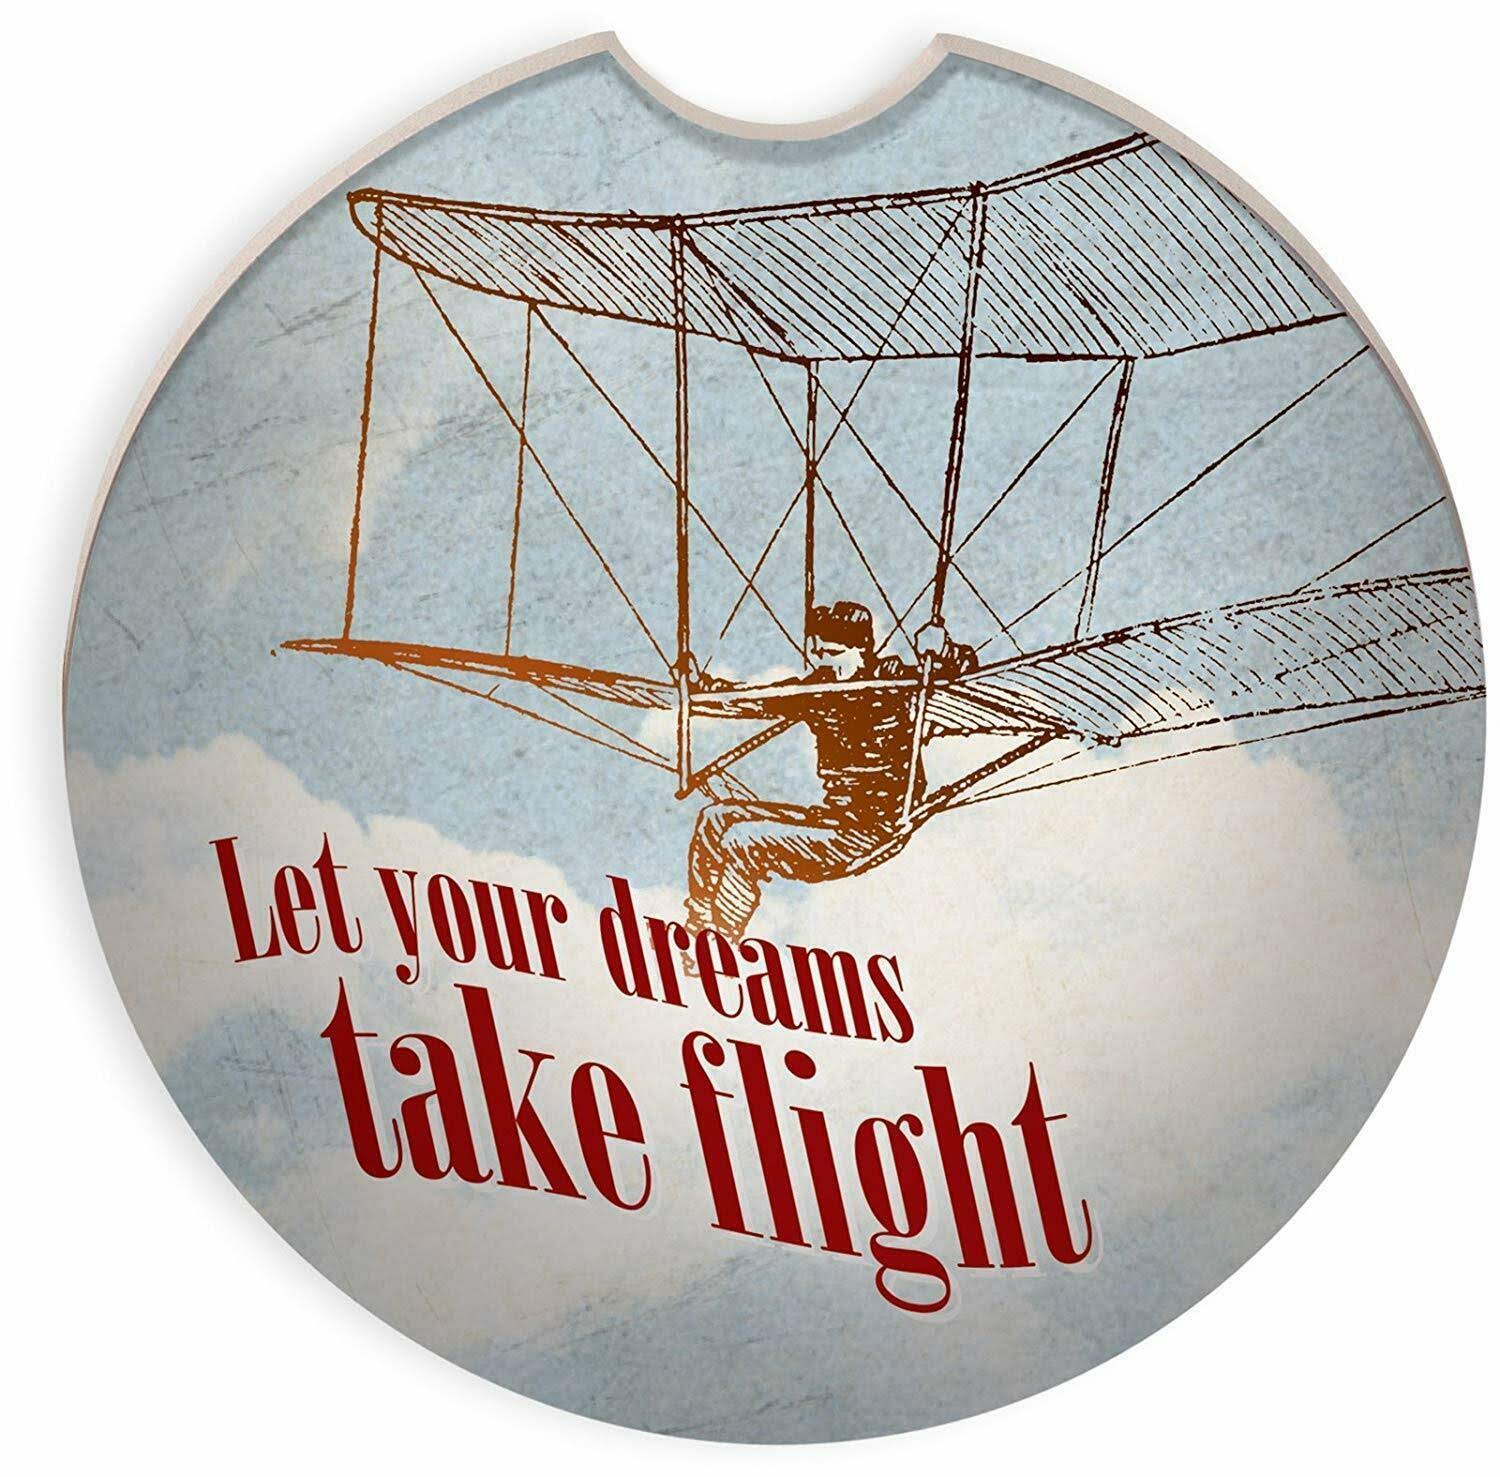 Let Your Dreams Take Flight Car Coaster